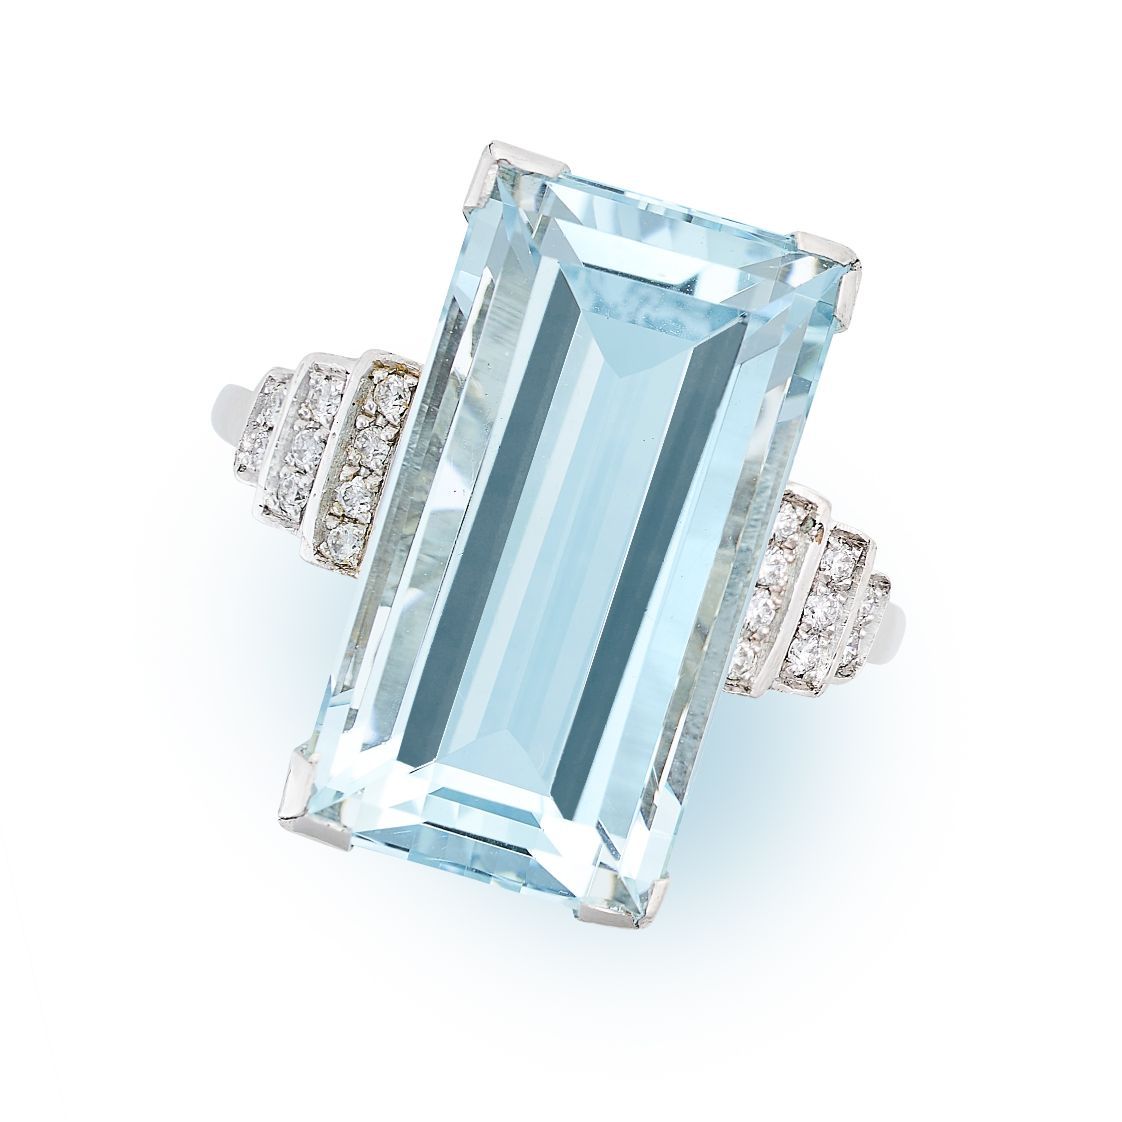 Null 海蓝宝石和钻石戒指，镶嵌了一颗9.10克拉的阶梯式切割海蓝宝石，并以圆形切割钻石作点缀，无化验标记，尺寸为N / 6，重5.8克。